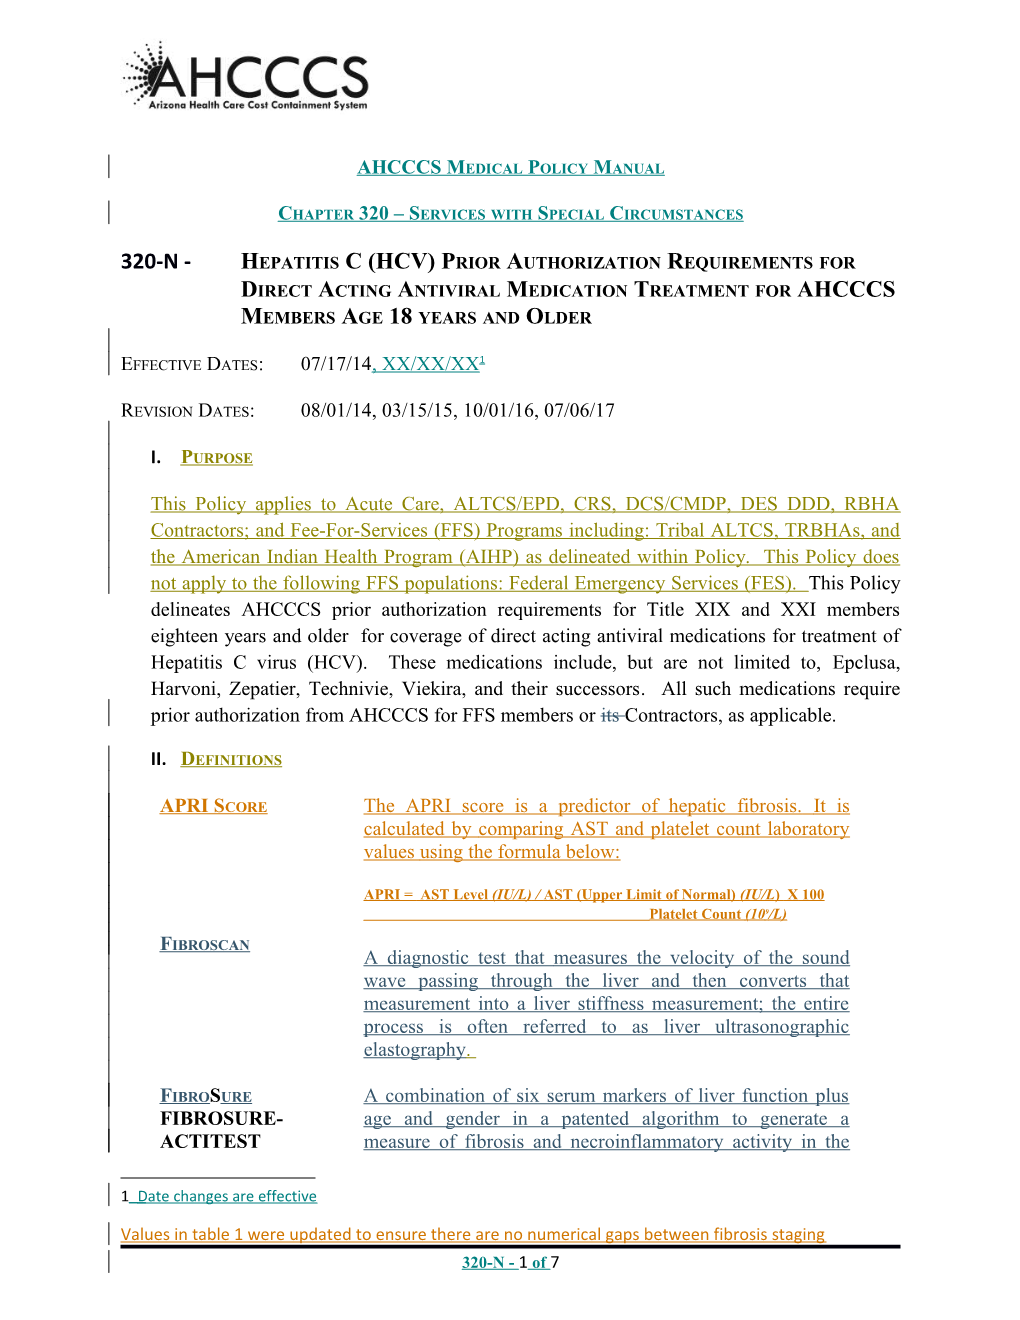 320N Hepatitis C Pa Criteria Draft 2015-04